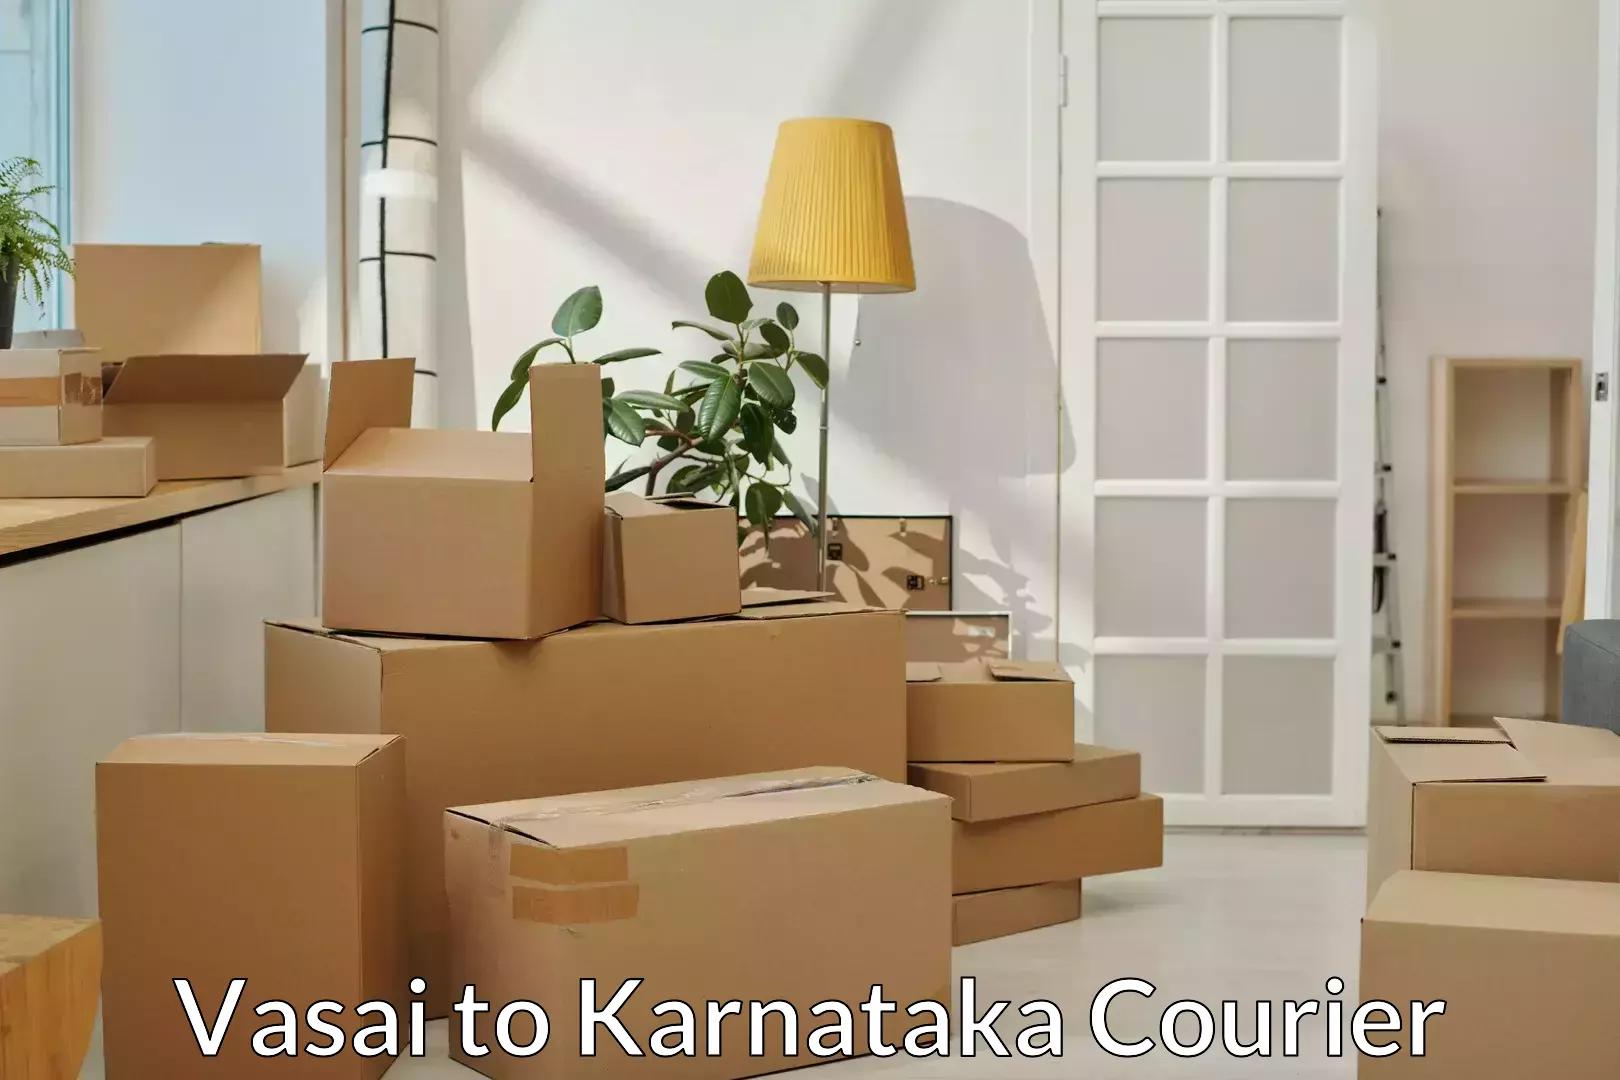 Efficient moving company Vasai to Srirangapatna